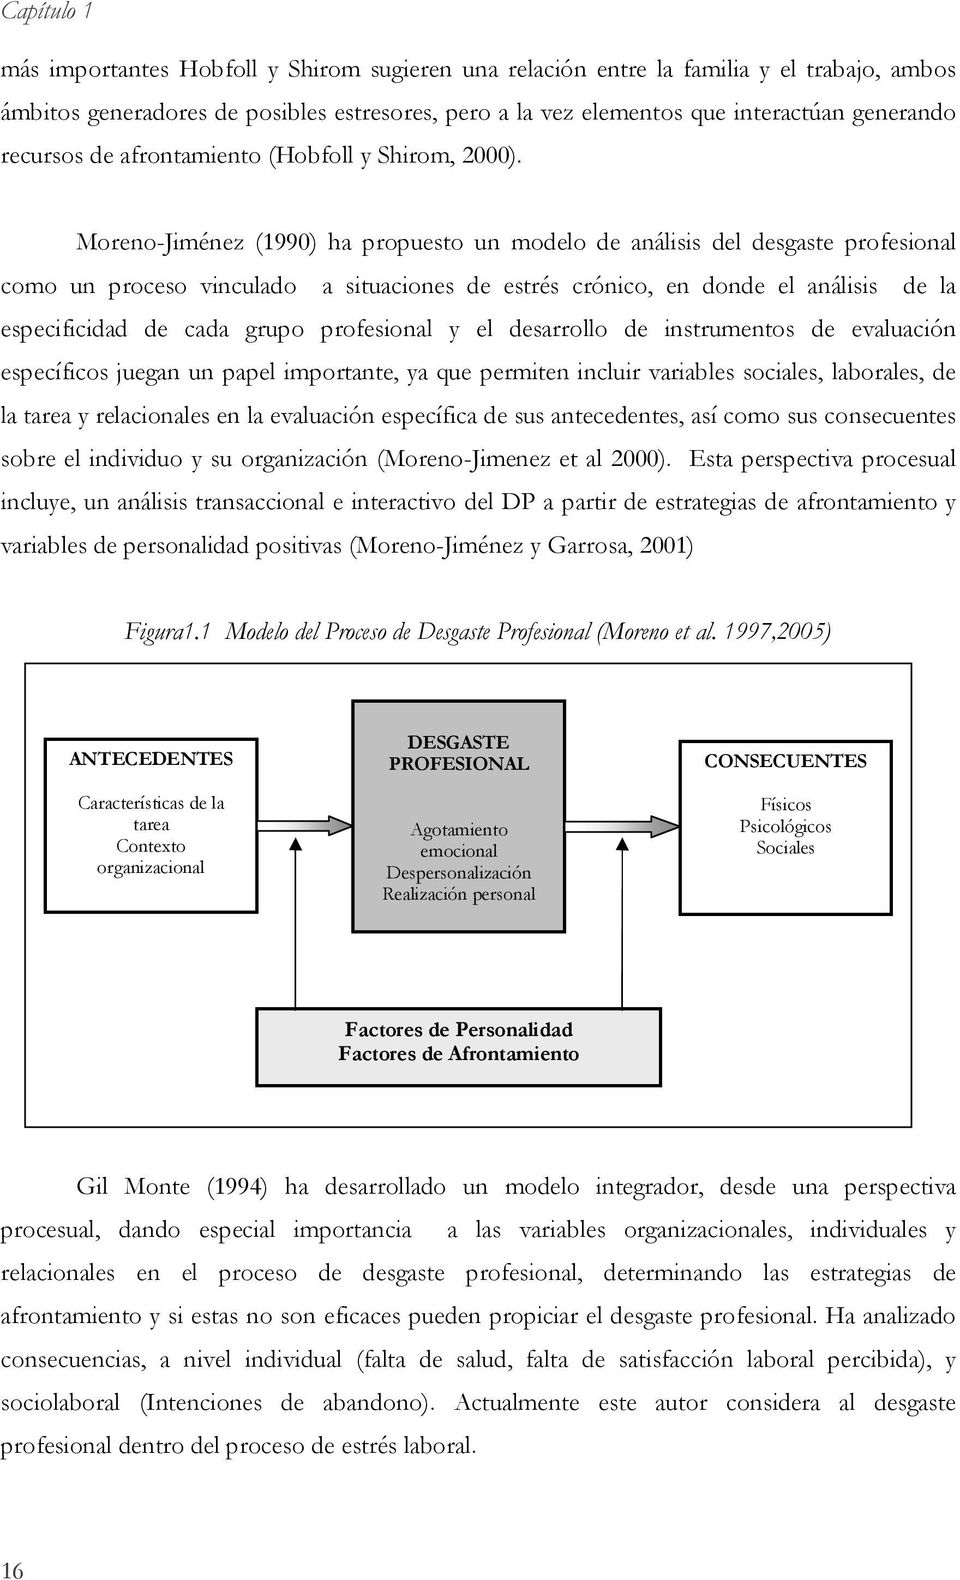 Moreno-Jiménez (1990) ha propuesto un modelo de análisis del desgaste profesional como un proceso vinculado a situaciones de estrés crónico, en donde el análisis de la especificidad de cada grupo